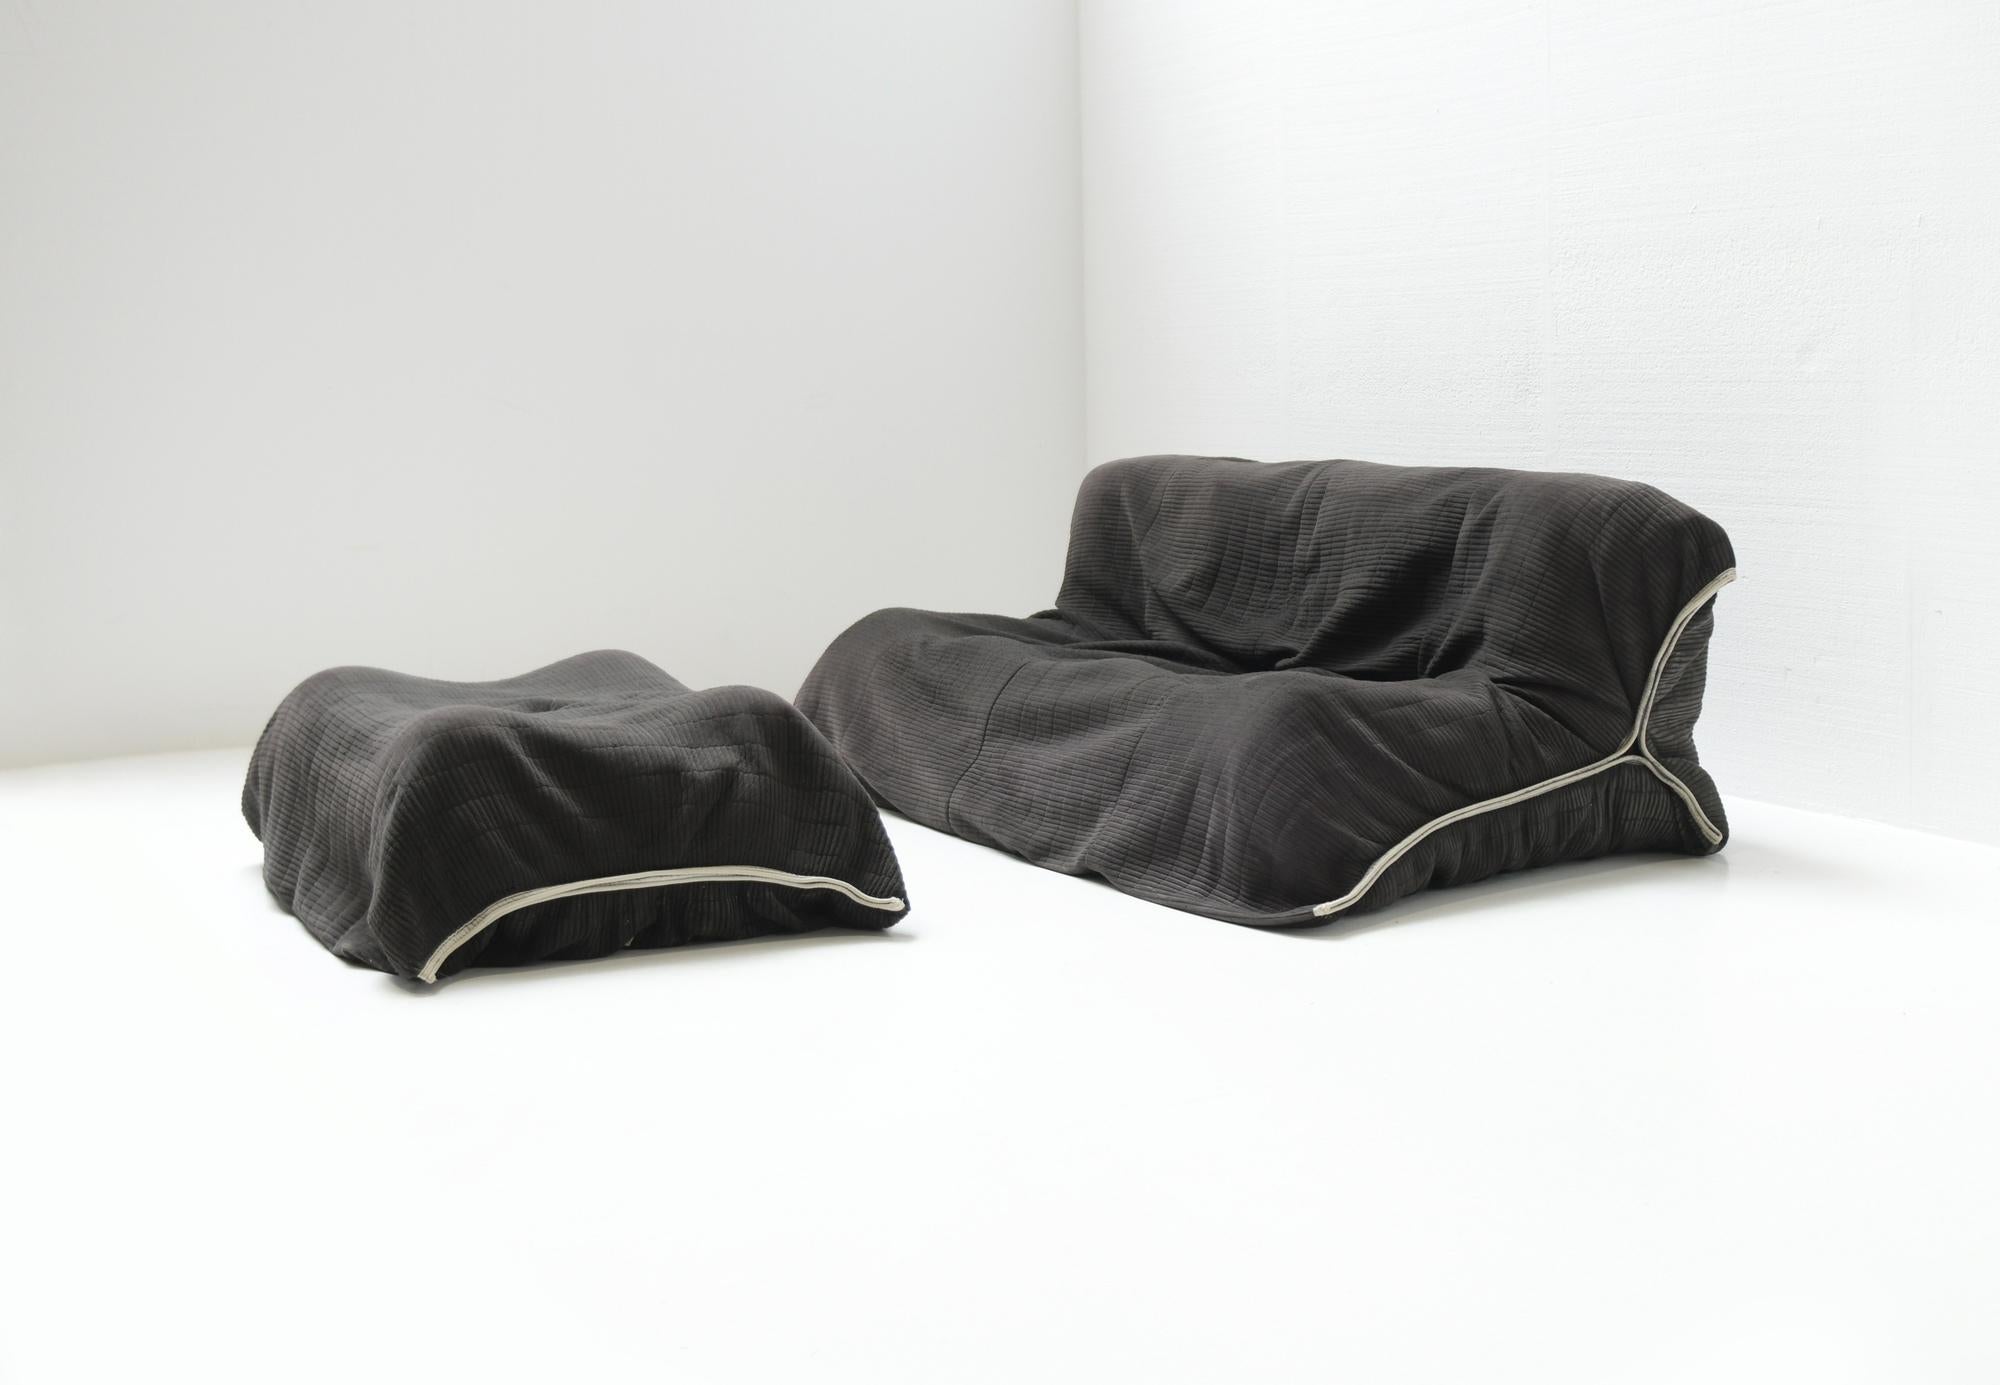 Très rare, confortable canapé YOKO dans sa sellerie Alcantara d'origine, surdimensionnée et nervurée (1986).

Condit : 
Aucun dommage ou réparation / signes normaux d'utilisation pour son âge à certains endroits. 
Le couvercle peut être retiré